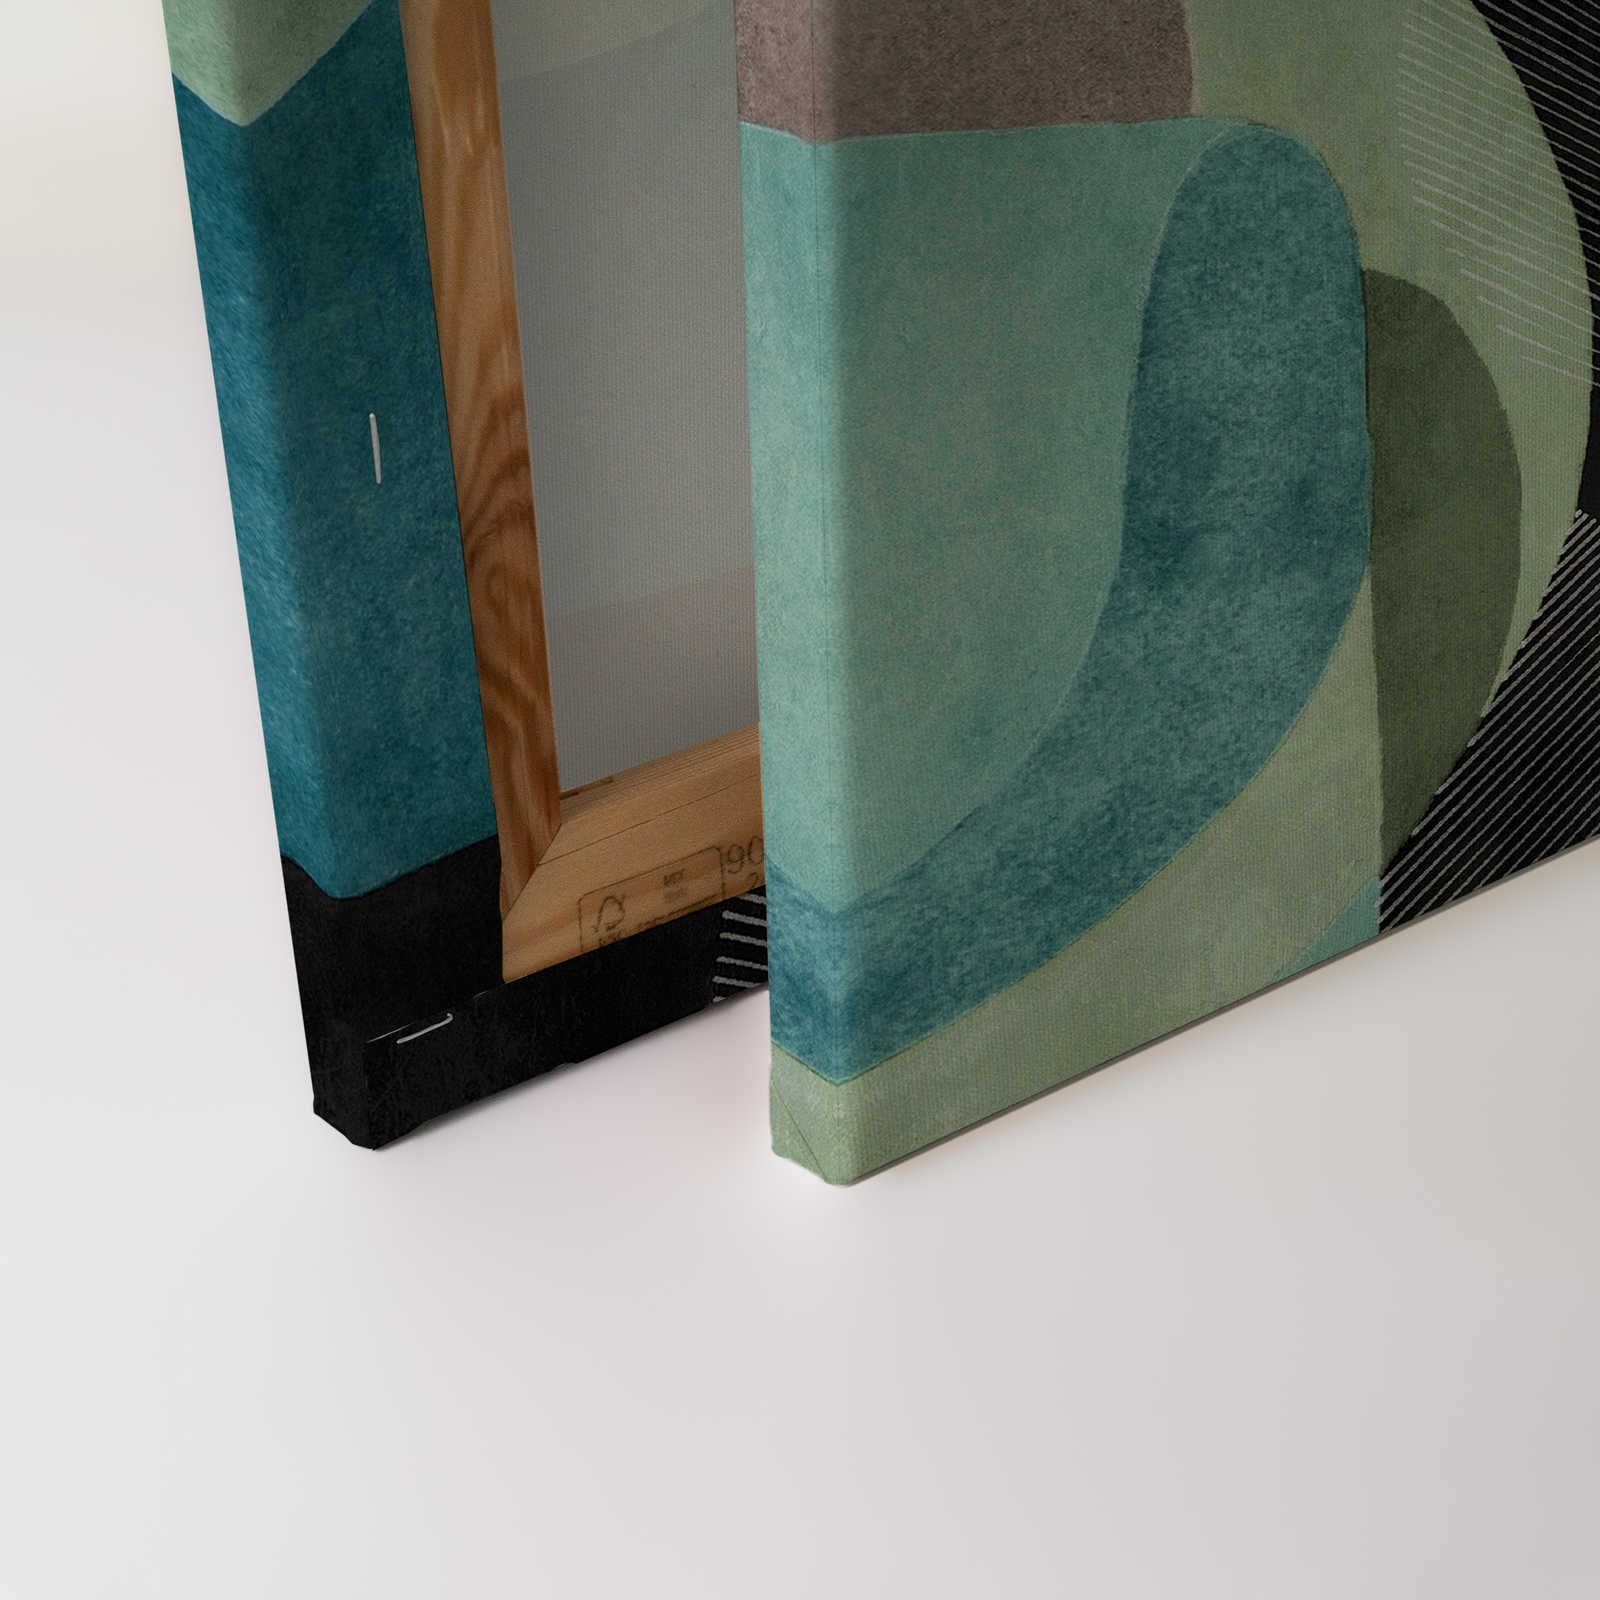             Meeting Place 1 - toile design abstrait ethnique noir & vert - 0,90 m x 0,60 m
        